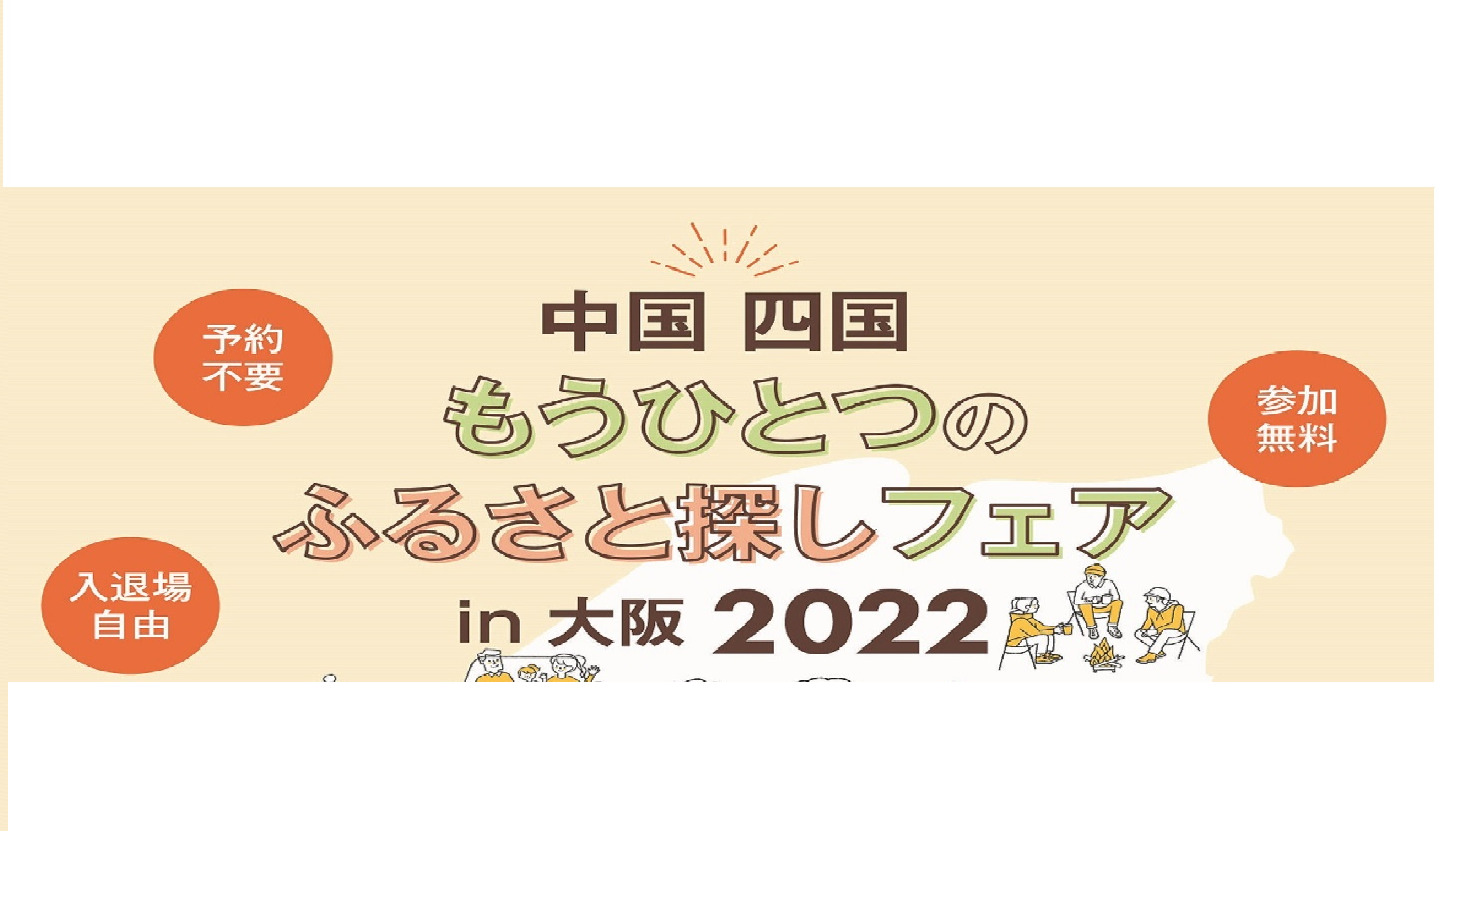 【イベント告知】「中国 四国 もうひとつのふるさと探しフェア in 大阪2022」に出展します！